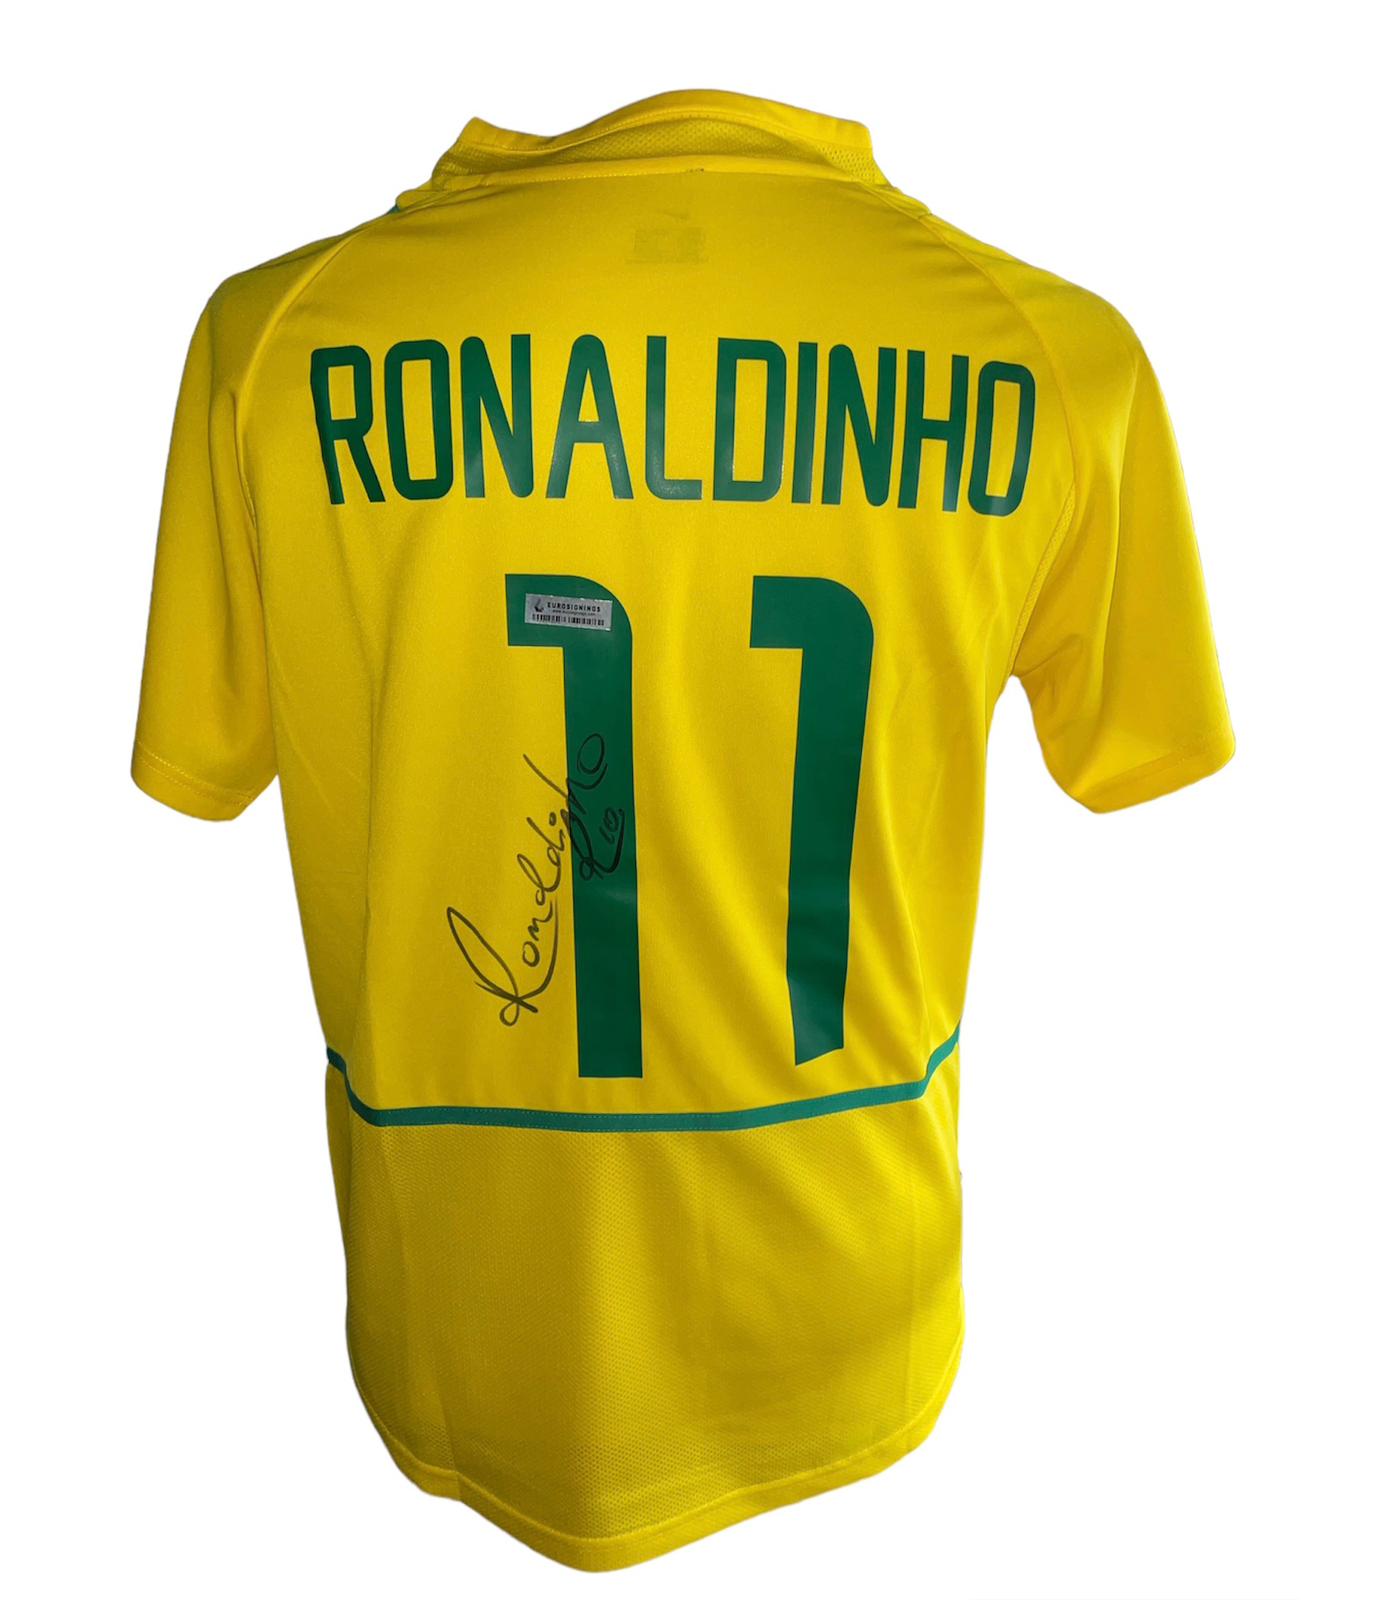 Ronaldinho gesigneerd Brazilië WK 2002 shirt met certificaat